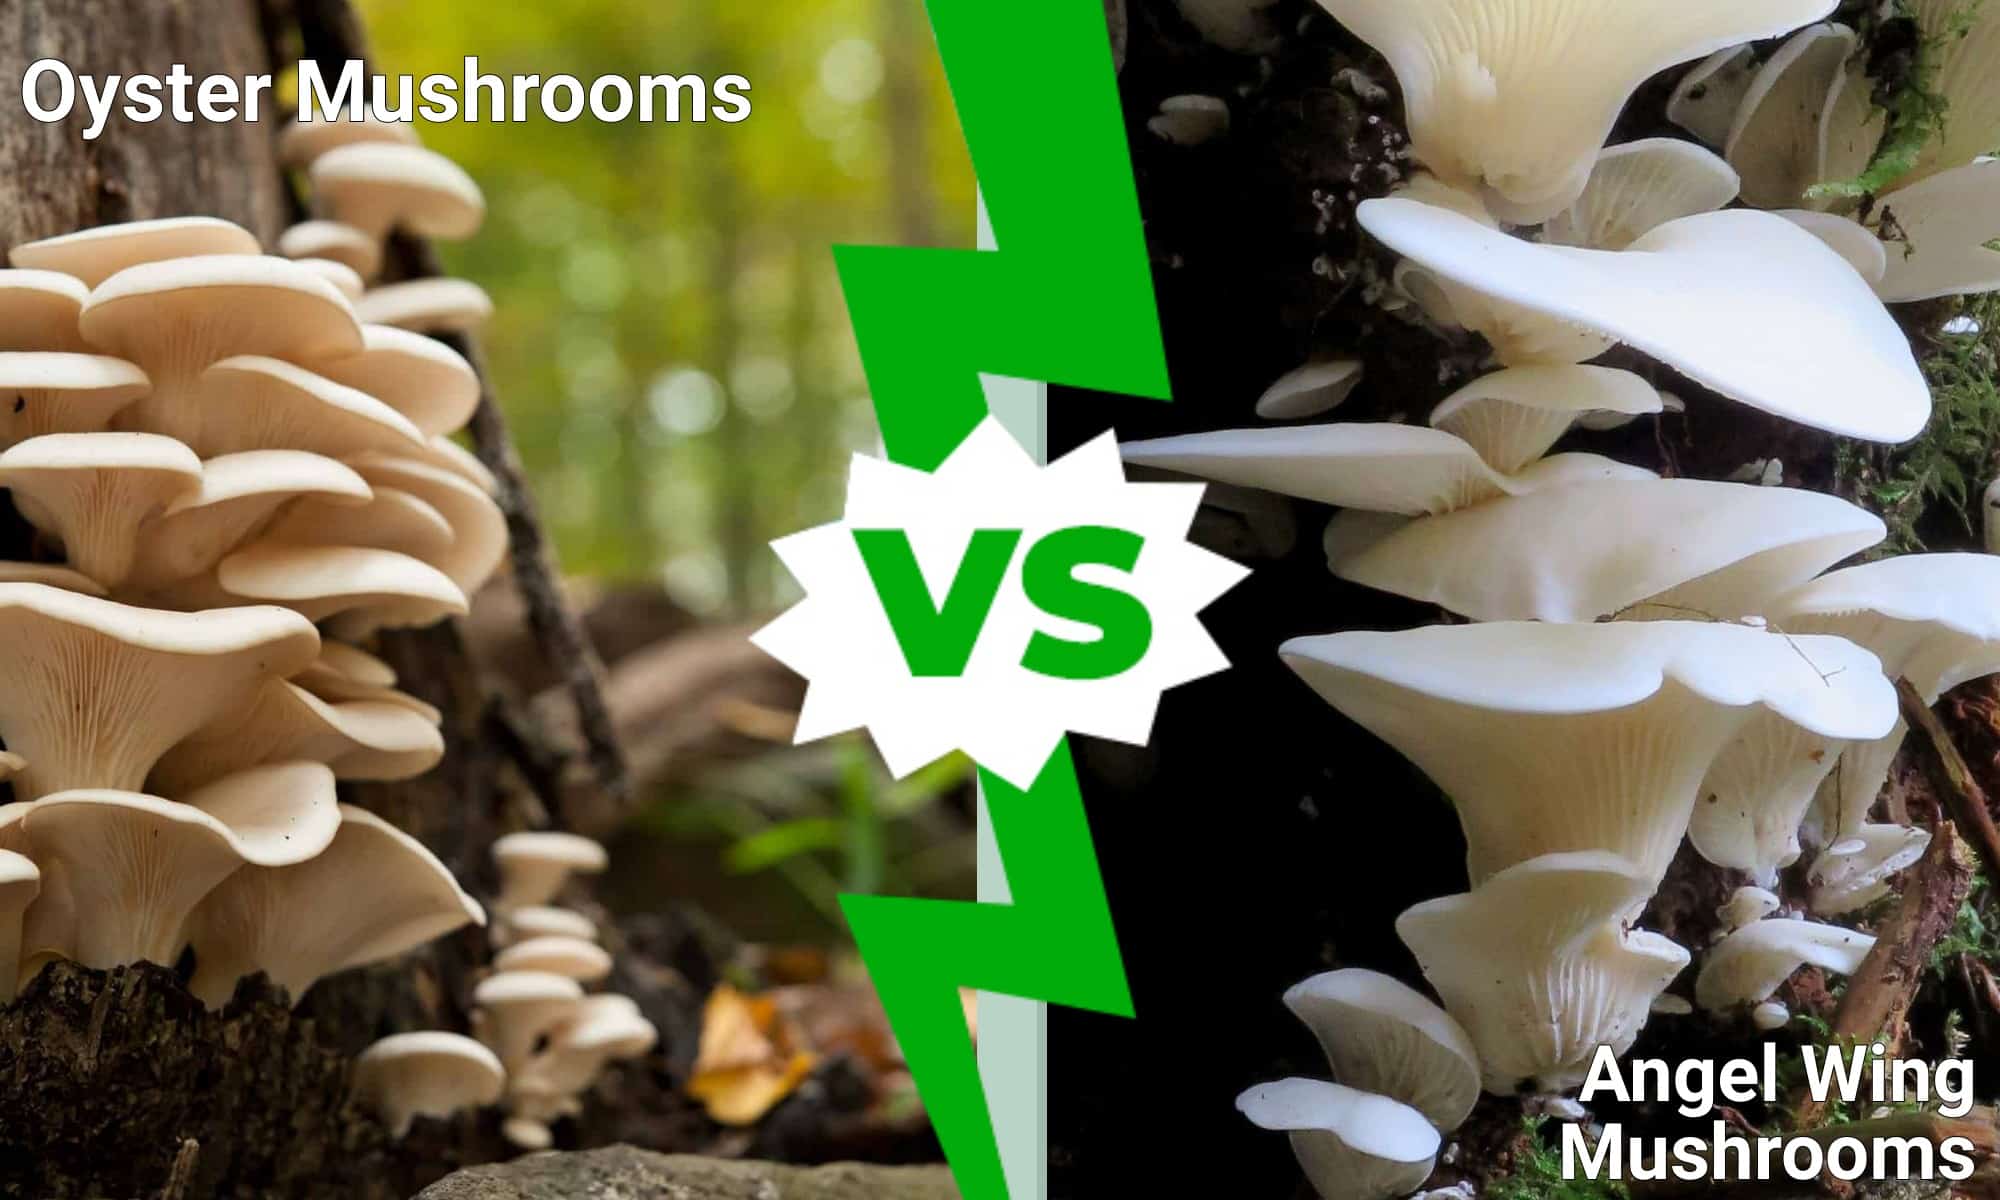 Oyster Mushrooms vs. Angel Wing Mushrooms